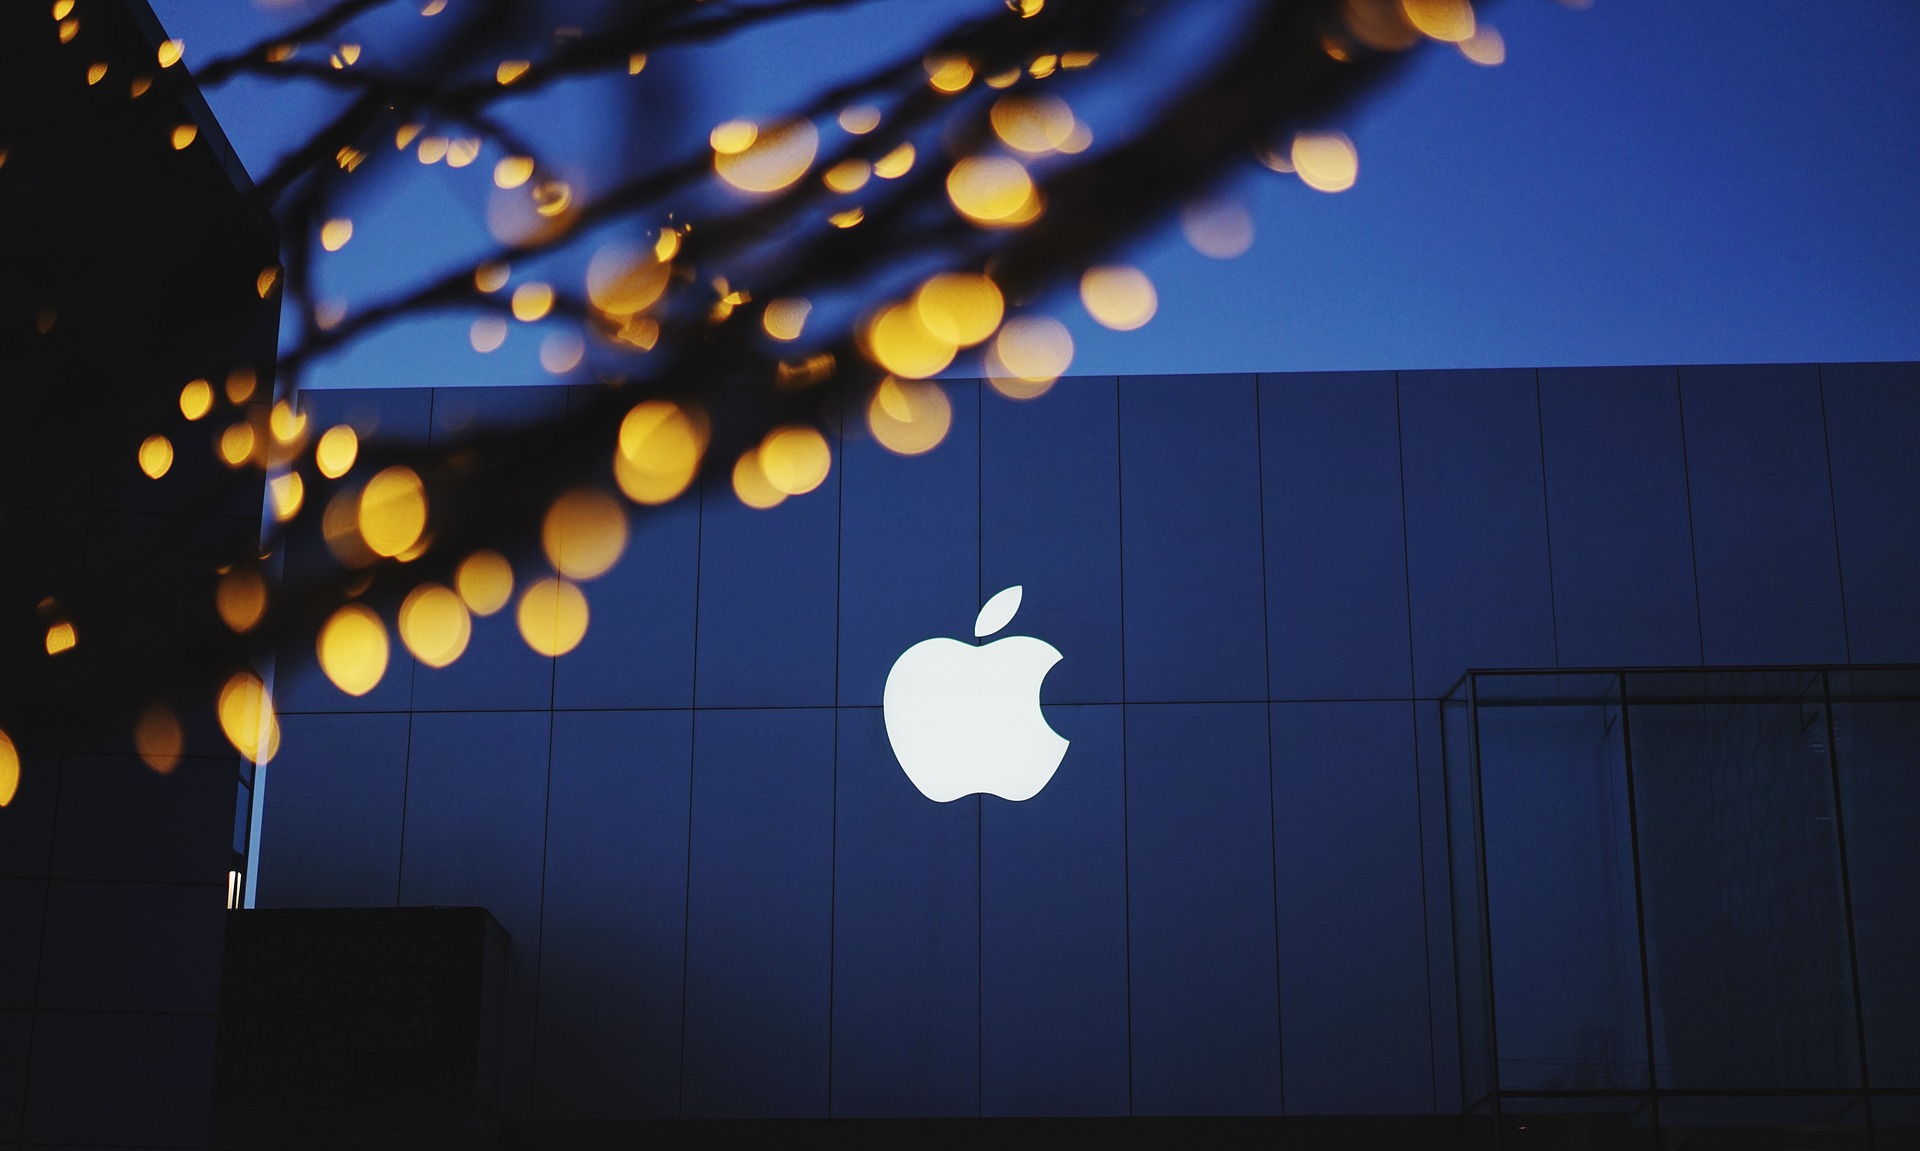 Apple “ร่วง” มาอยู่อันดับที่ 17 ของ “บริษัทพัฒนานวัตกรรมสูงสุด ปี 2019” : จากการจัดอันดับโดย Fast Company